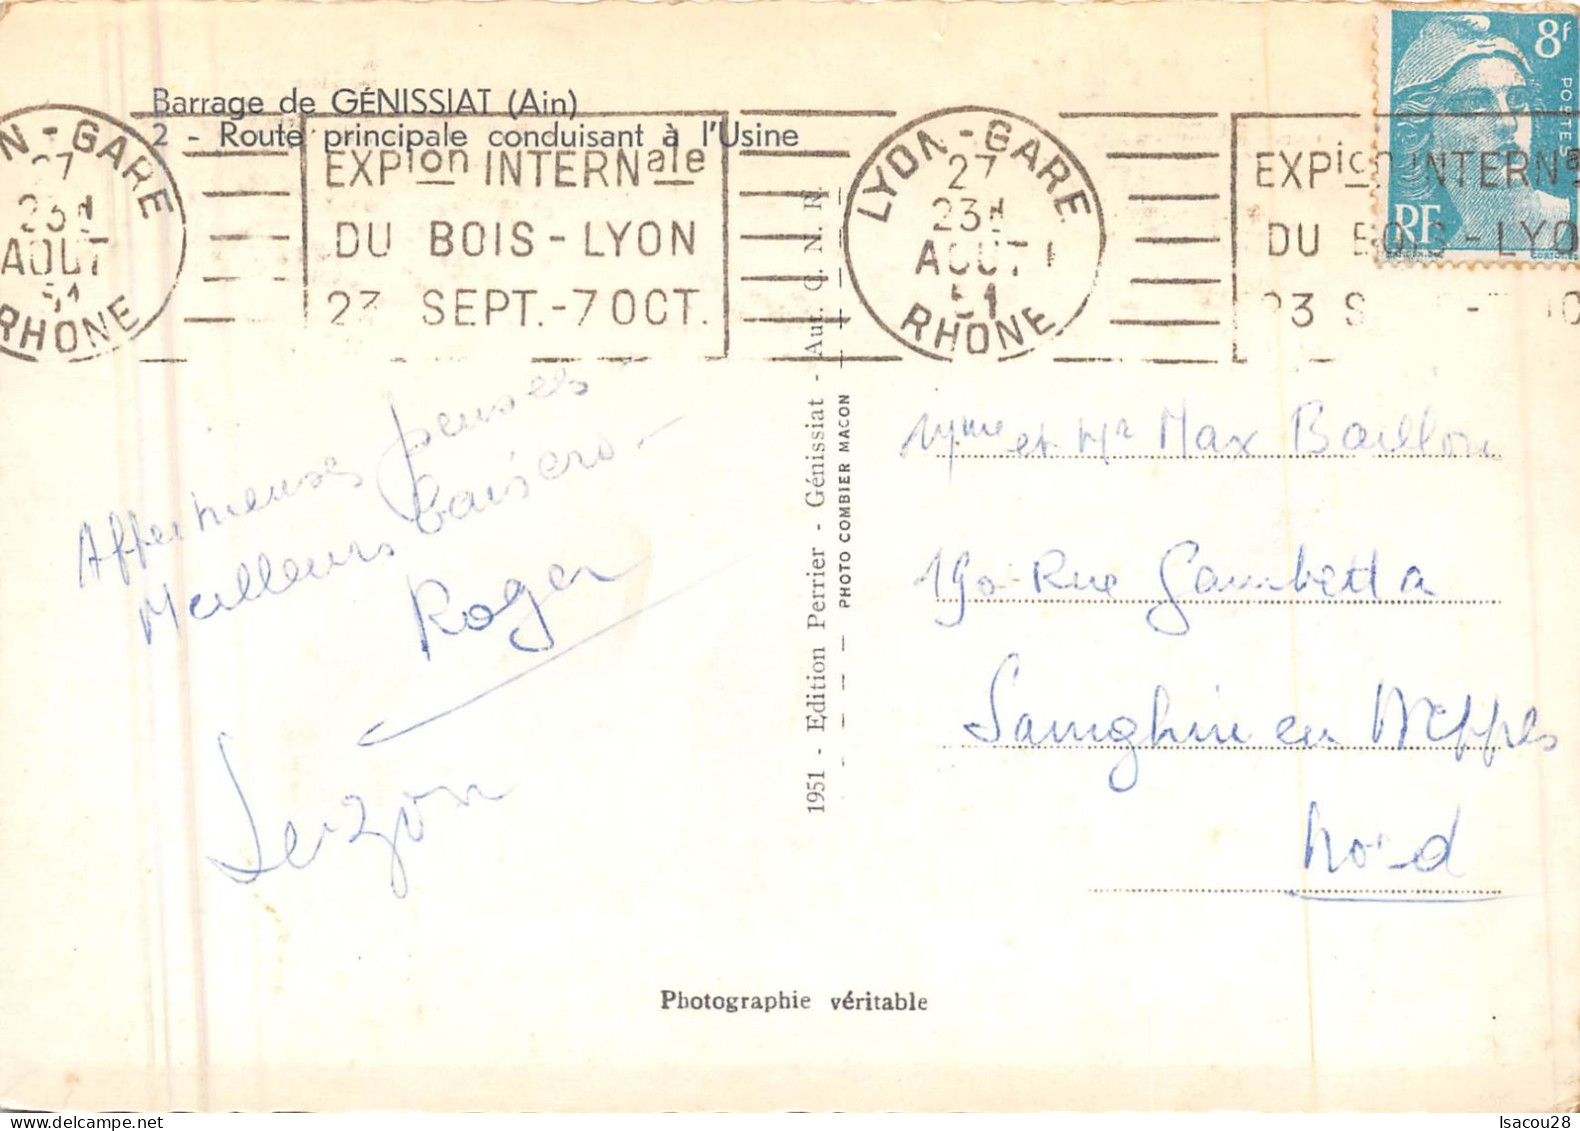 01 - Ain - Barrage De Génissiat - Cpsm Gd Format Dent. - Vue D'ensemble - Editions Perrier 1951 - 2CP - Génissiat